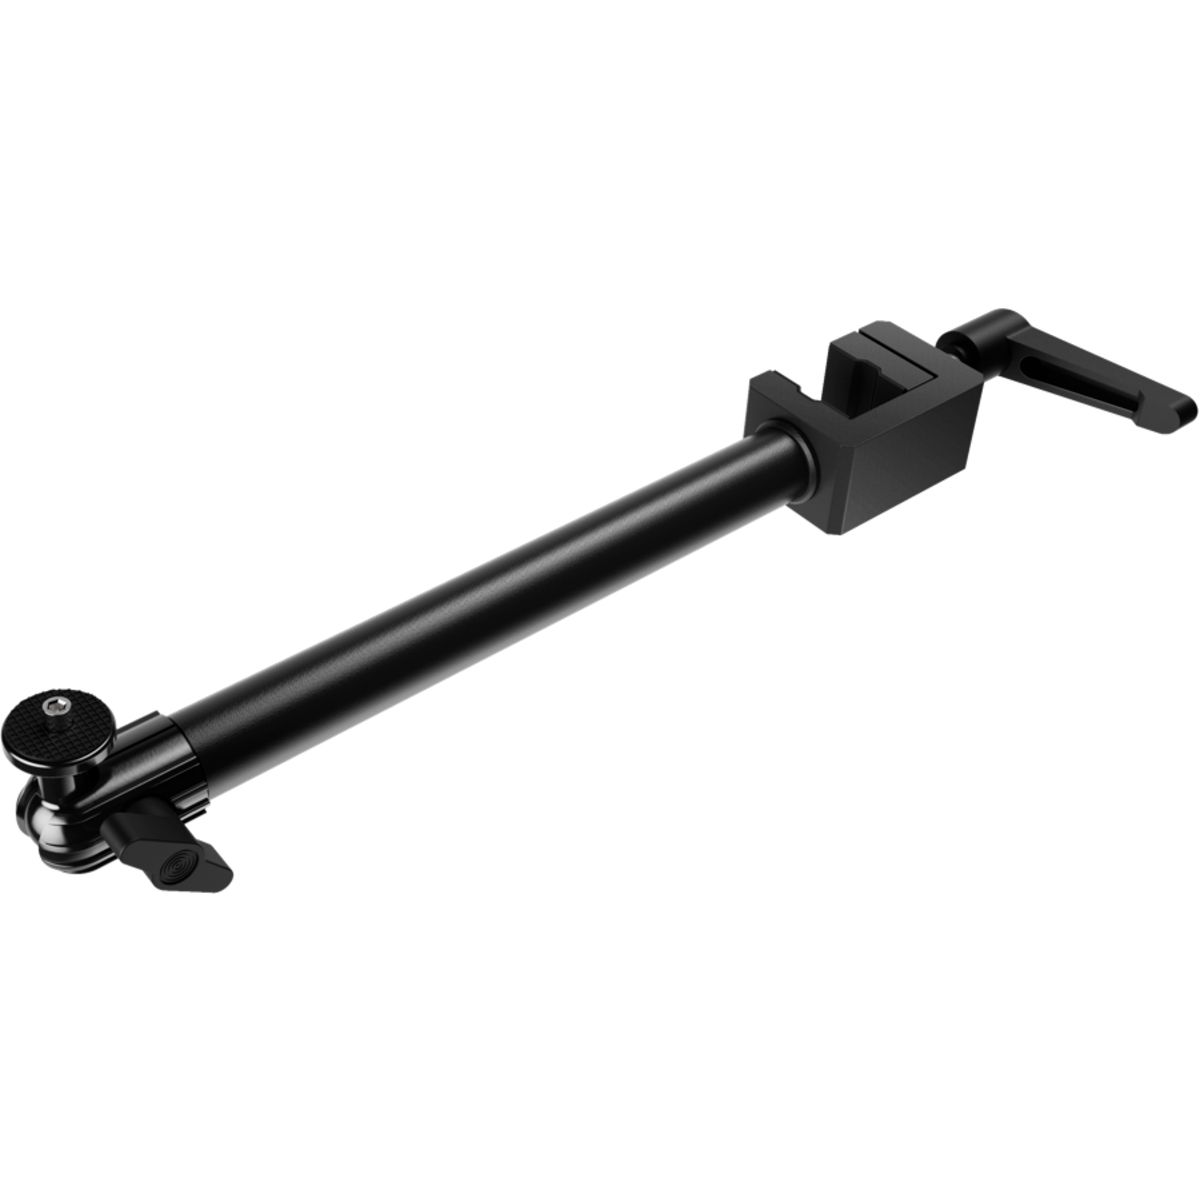 10AAG9901 - Brazo Articulado ELGATO Solid Arm (10AAG9901)